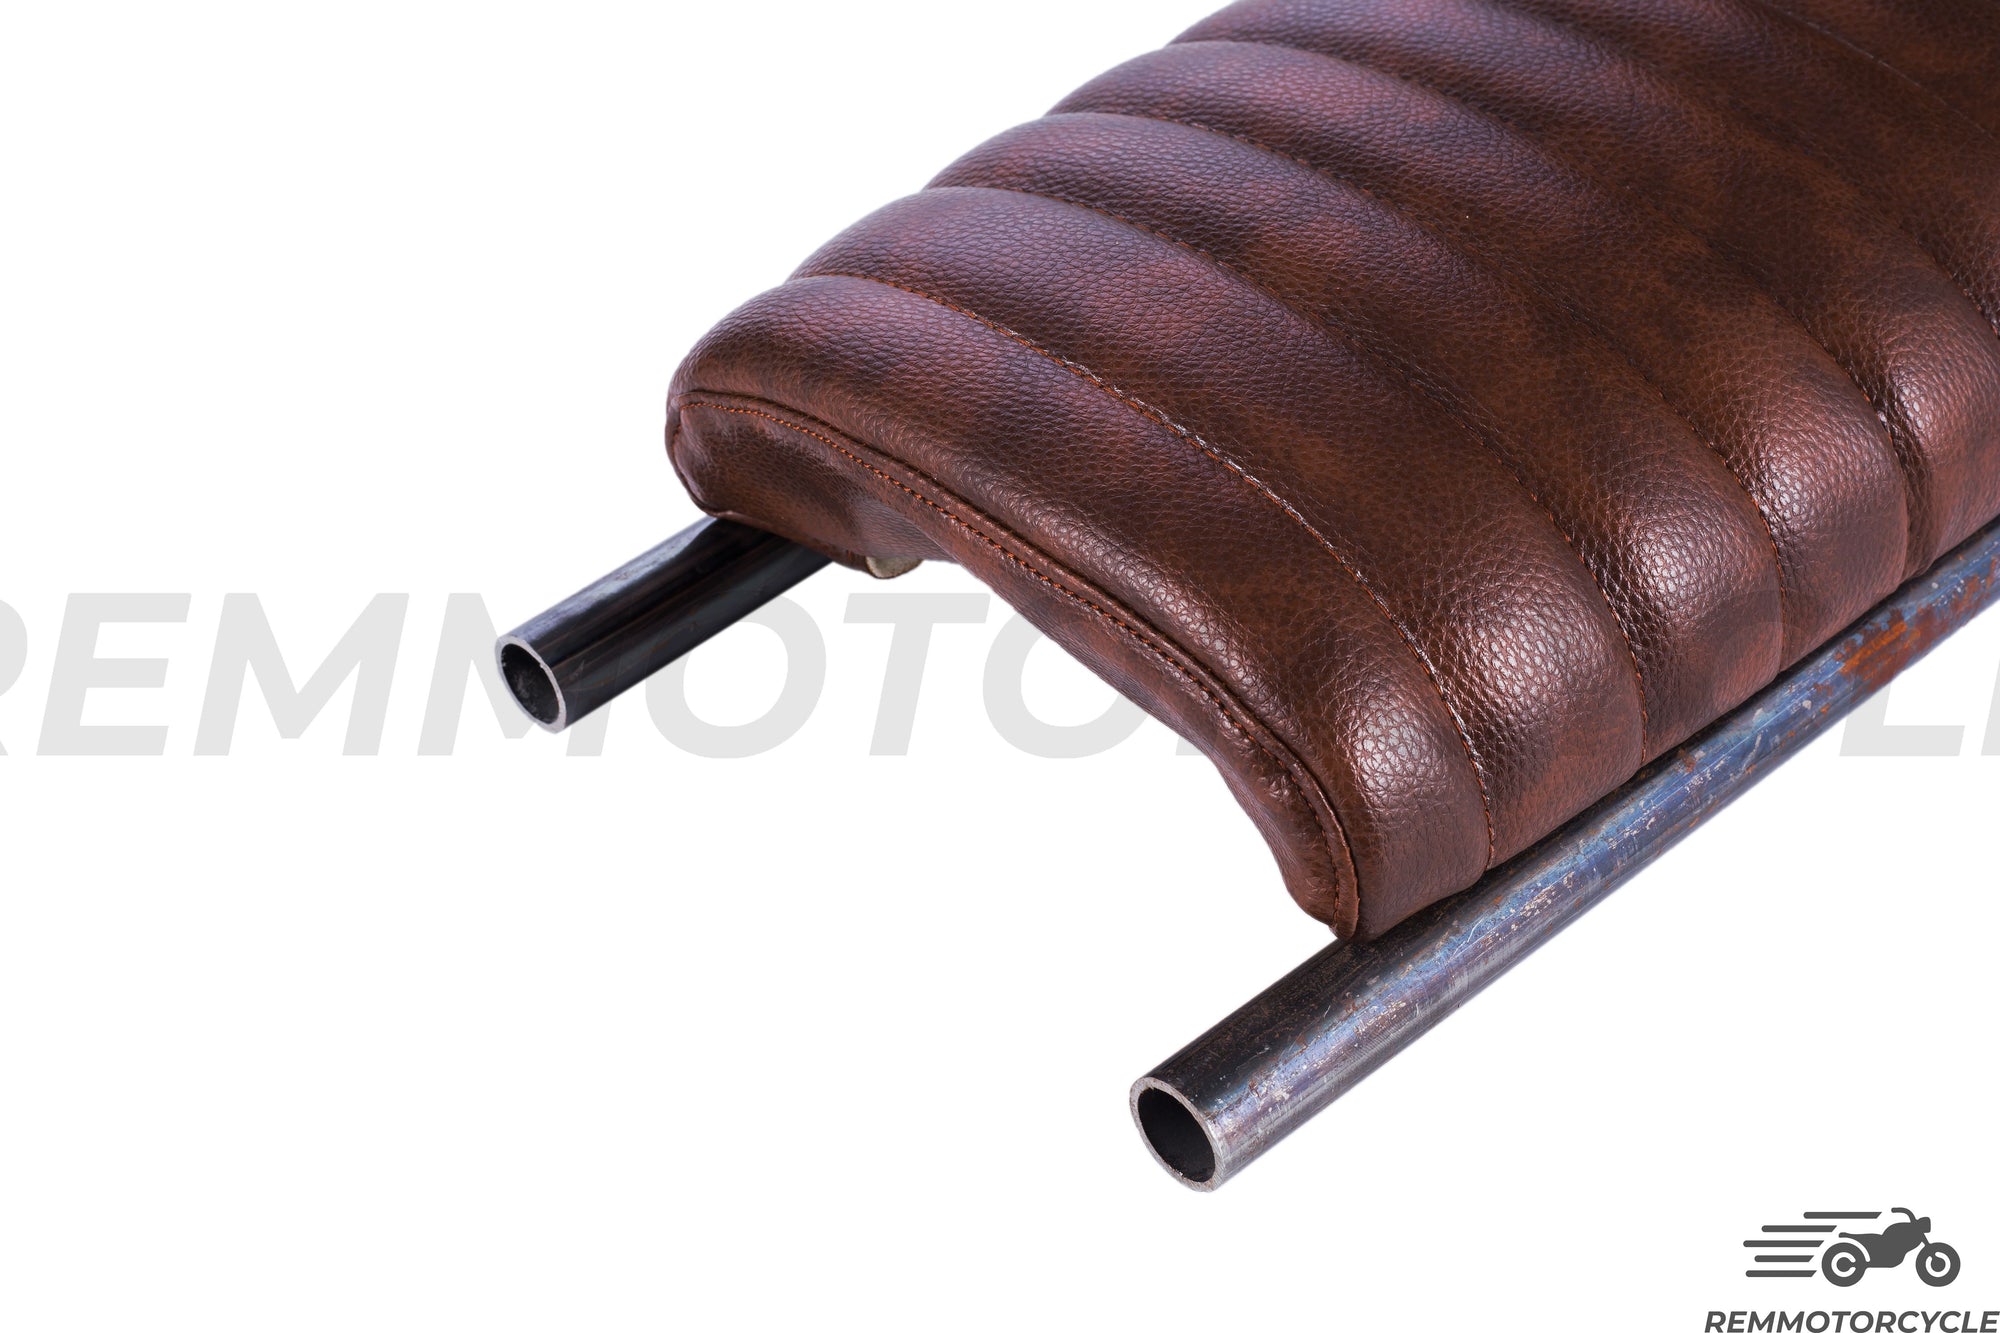 Jenis pelana coklat 2 menaikkan latar belakang logam 50 atau 60 cm dengan gelung dengan atau tanpa LED